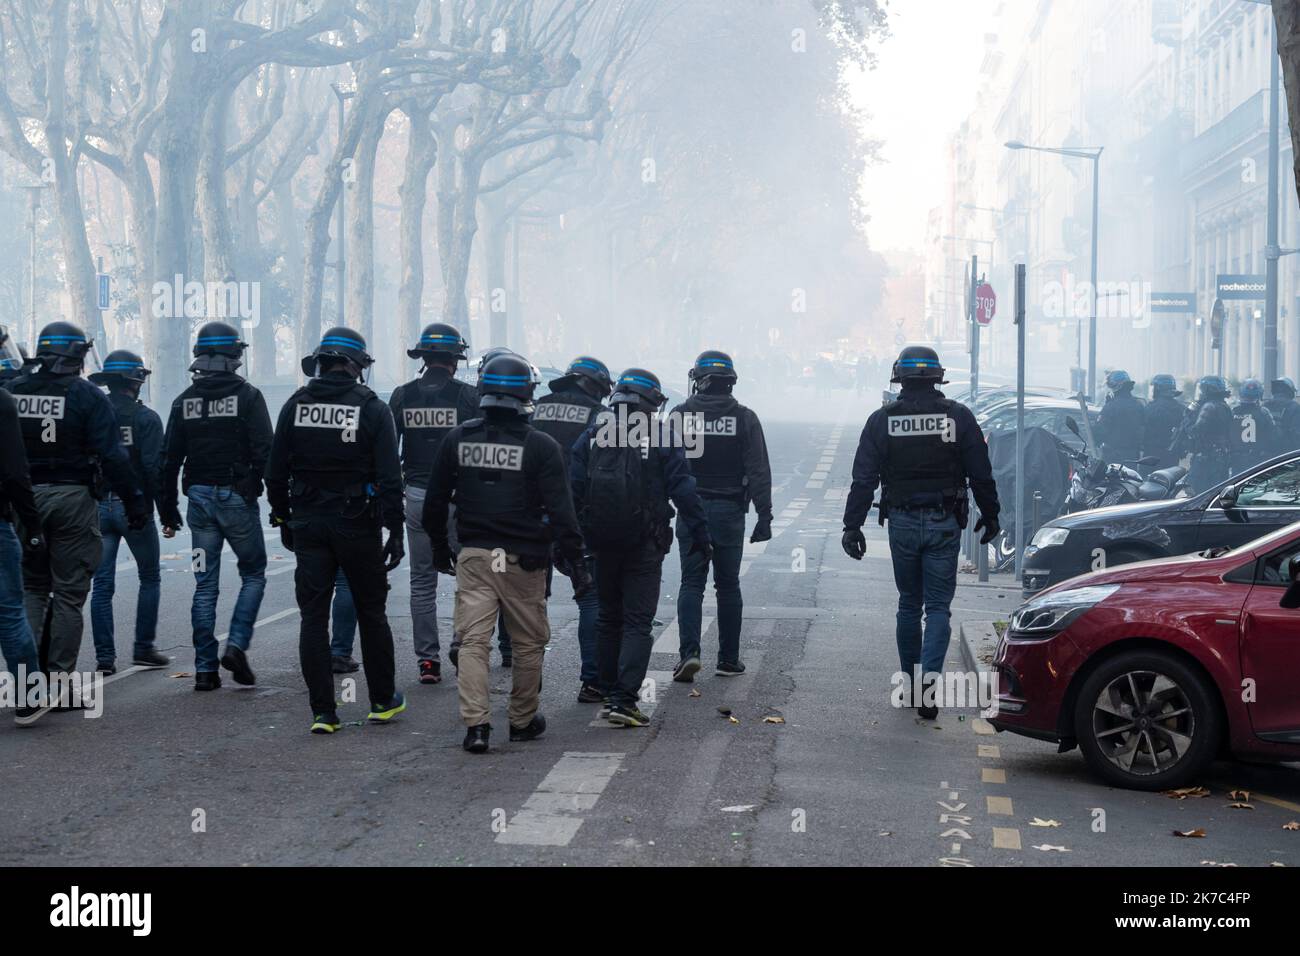 ©Nicolas Beaumont / Le Pictorium/MAXPPP - Nicolas Beaumont / Le Pictorium - 28/11/2020 - France / Rhone / Lyon - A proximite de la prefecture du Rhone, une partie des manifestants tentent de forcer les barrage de police. Les policiers repondent par des jets de gaz lacrymogene. Plusieurs manifestations sont organisees en France et notamment a Lyon le samedi 28 novembre 2020 conte le projet de loi Securite Globale et en particulier l'article 24. / 28/11/2020 - France / Rhone (department) / Lyon - Near the Rhone prefecture, some of the demonstrators are trying to force the police roadblock. The p Stock Photo